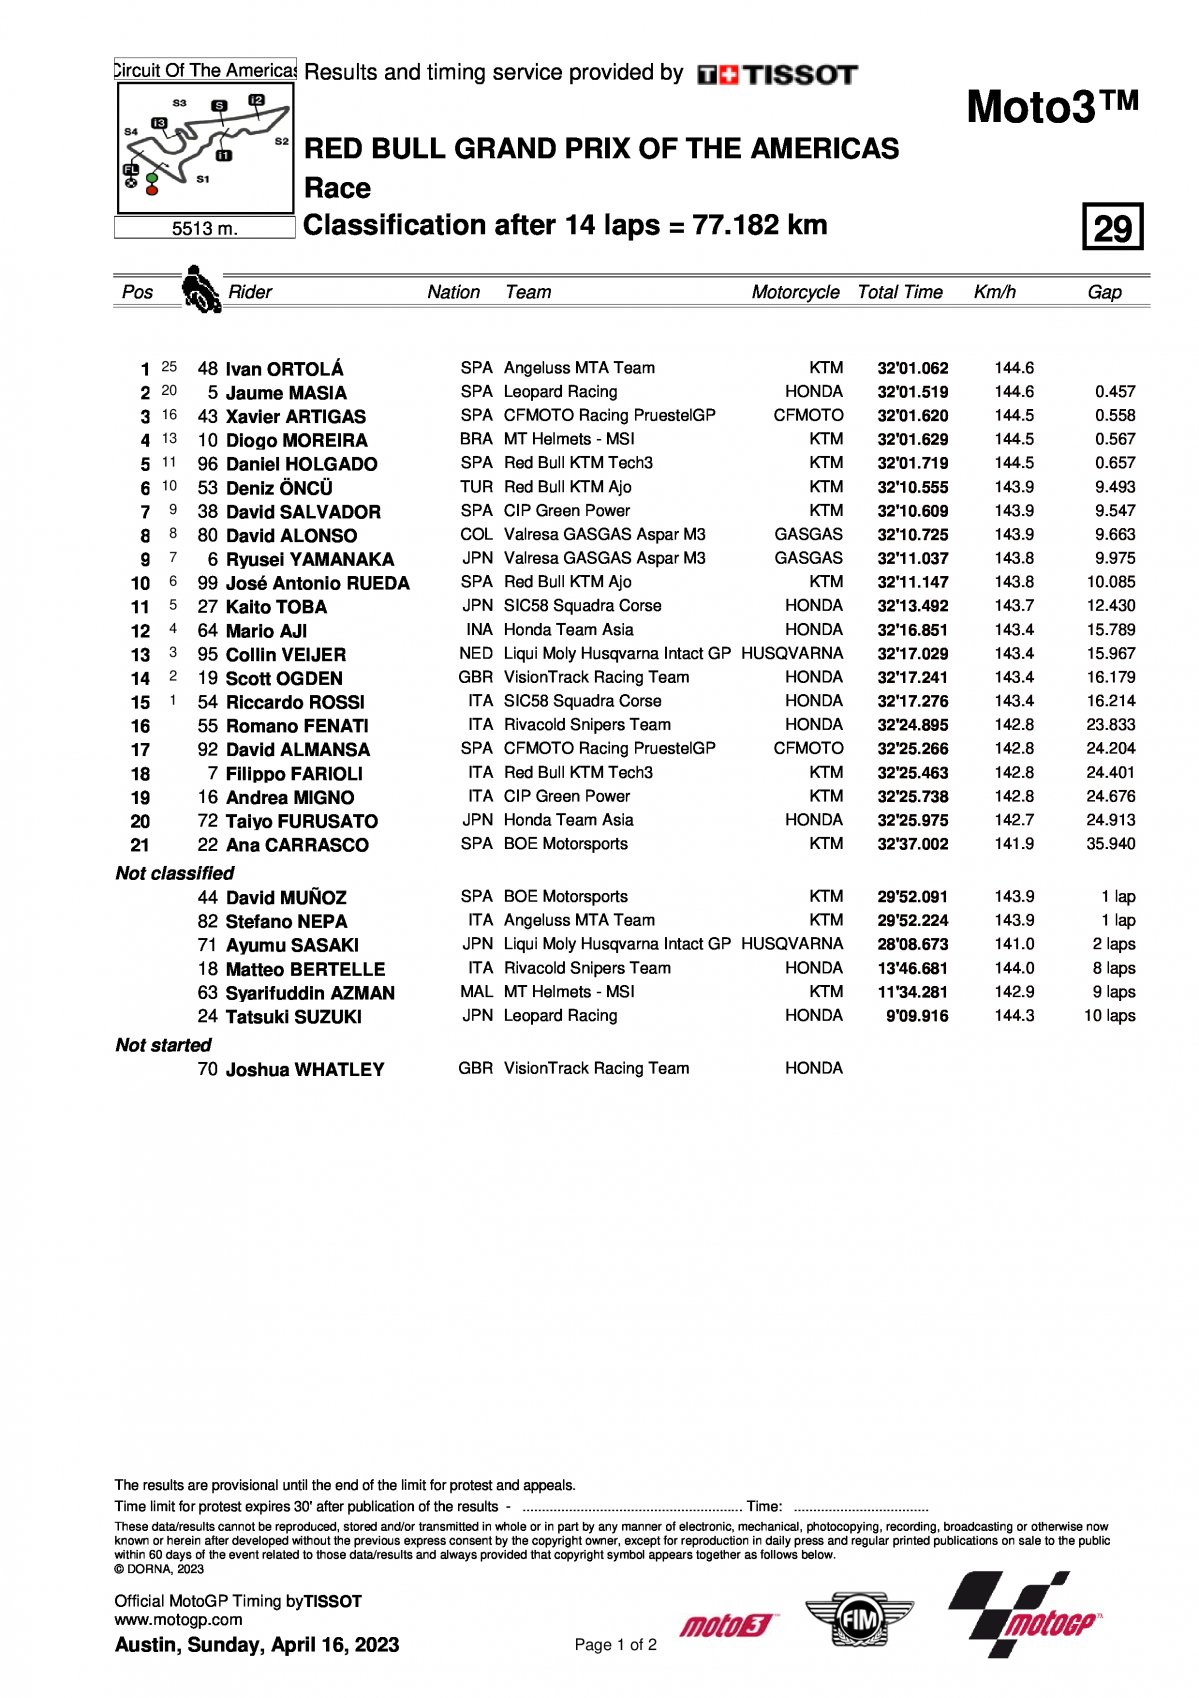 Результаты Гран-При Америк (AmericasGP) Moto3 (16/04/2023)